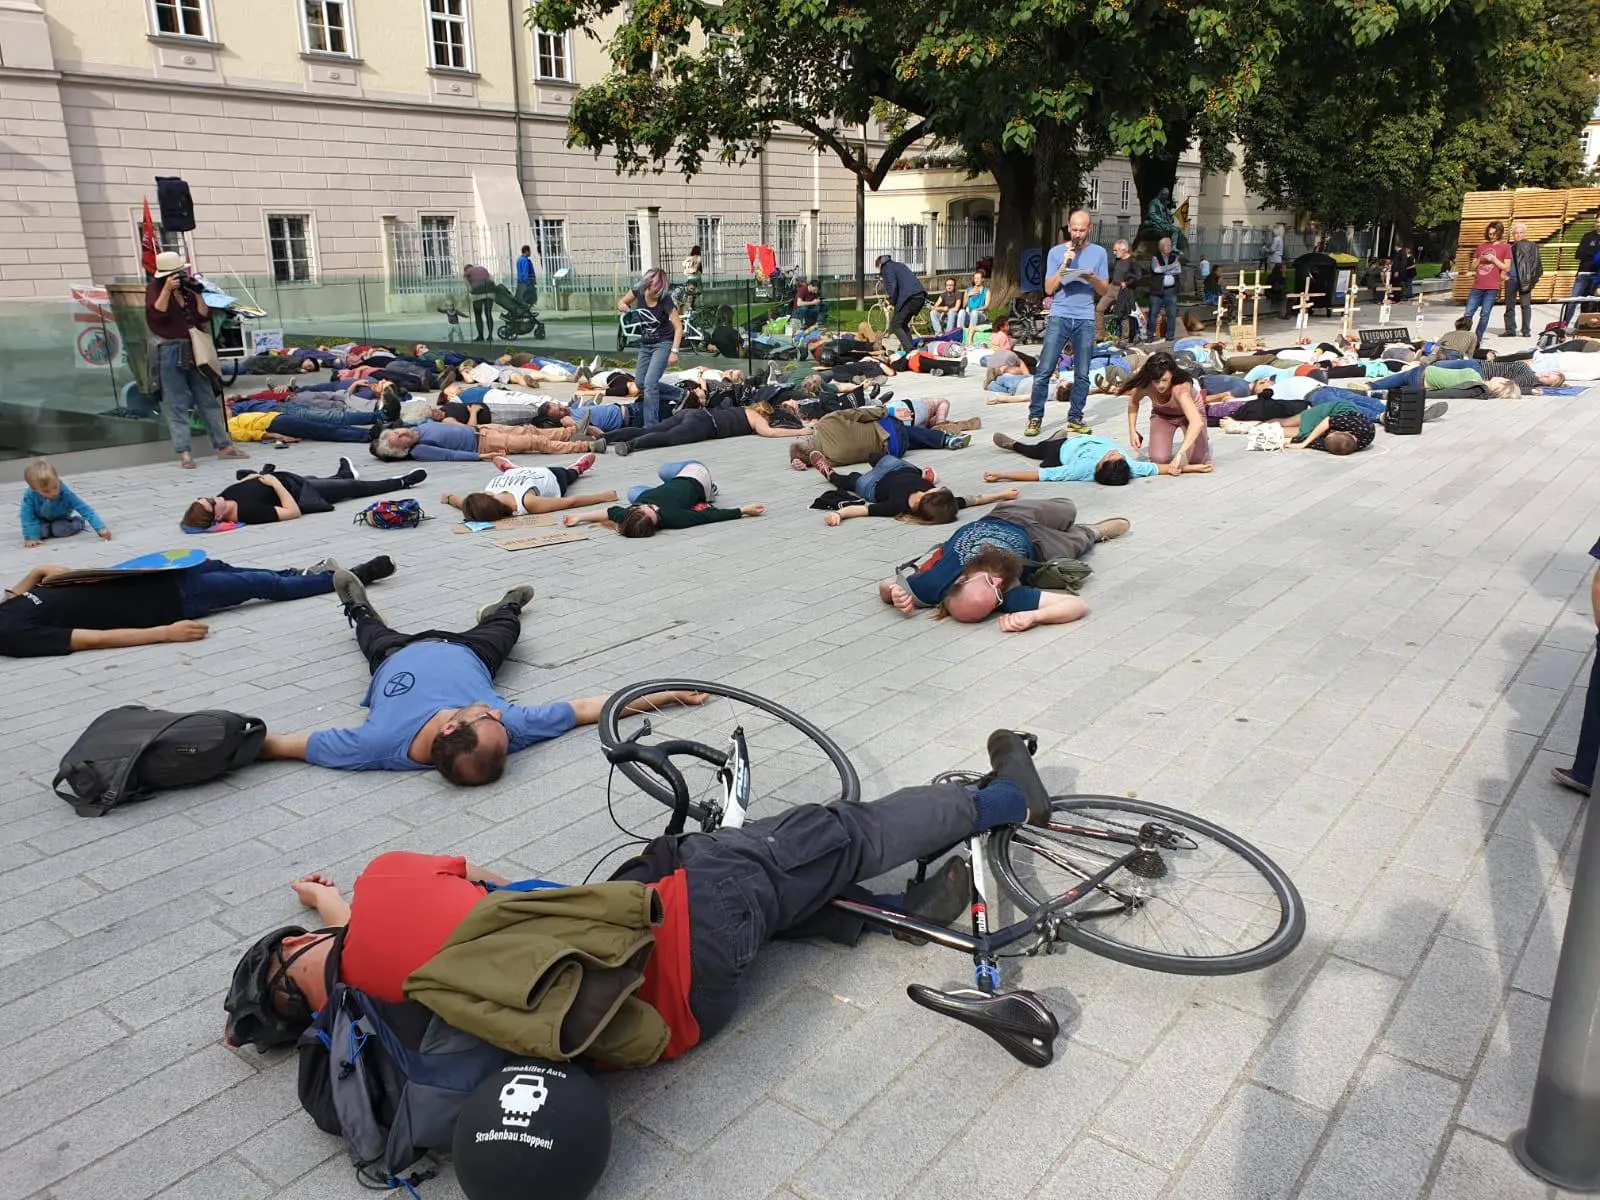 AktivistInnen und SympatisantInnen von XR Oberösterreich liegen vor dem Landhaus am Boden. Ein Aktivist hält eine Rede. Das Die in symbolisiert das Artensterben und die Bedrohung durch die Klimakrise